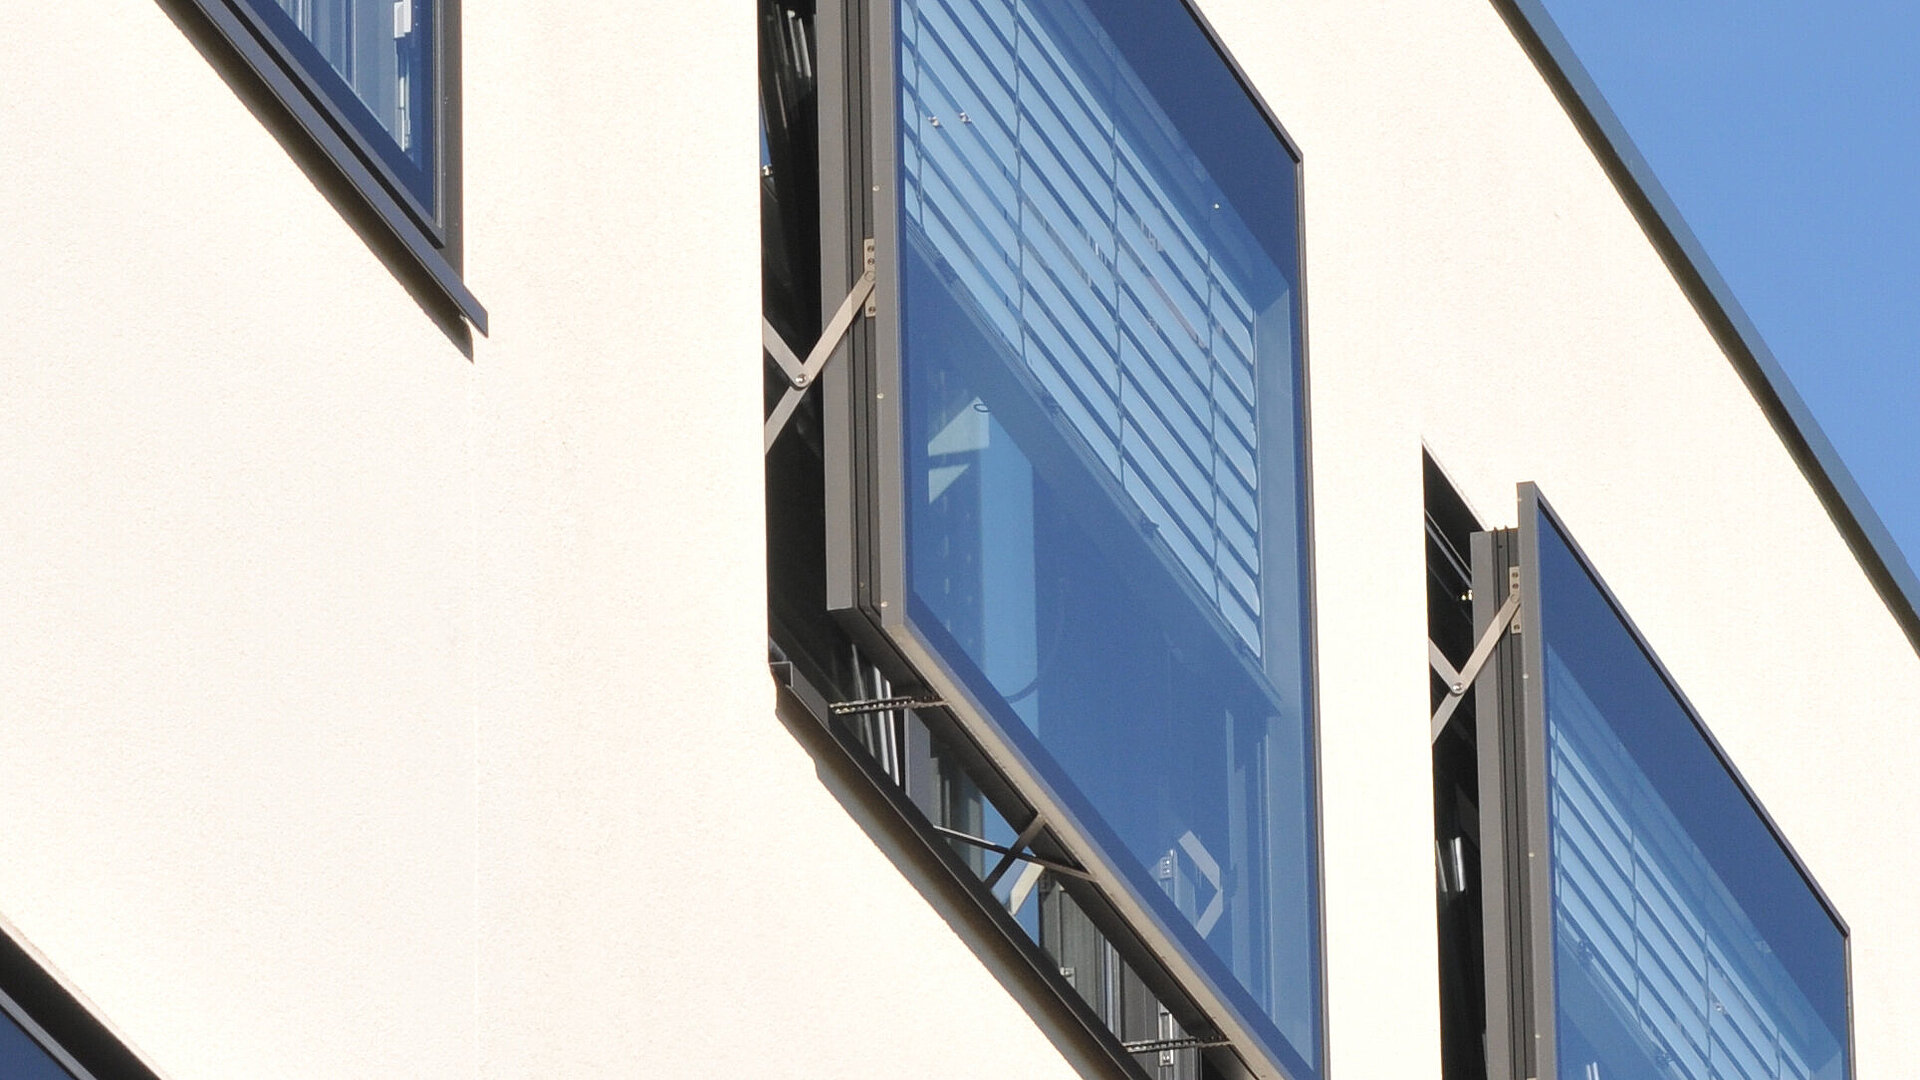 Ein Bild von modernen Verbundfenstern, die mechanisch aufgemacht werden, welche das ift Rosenheim selbst verwendet.